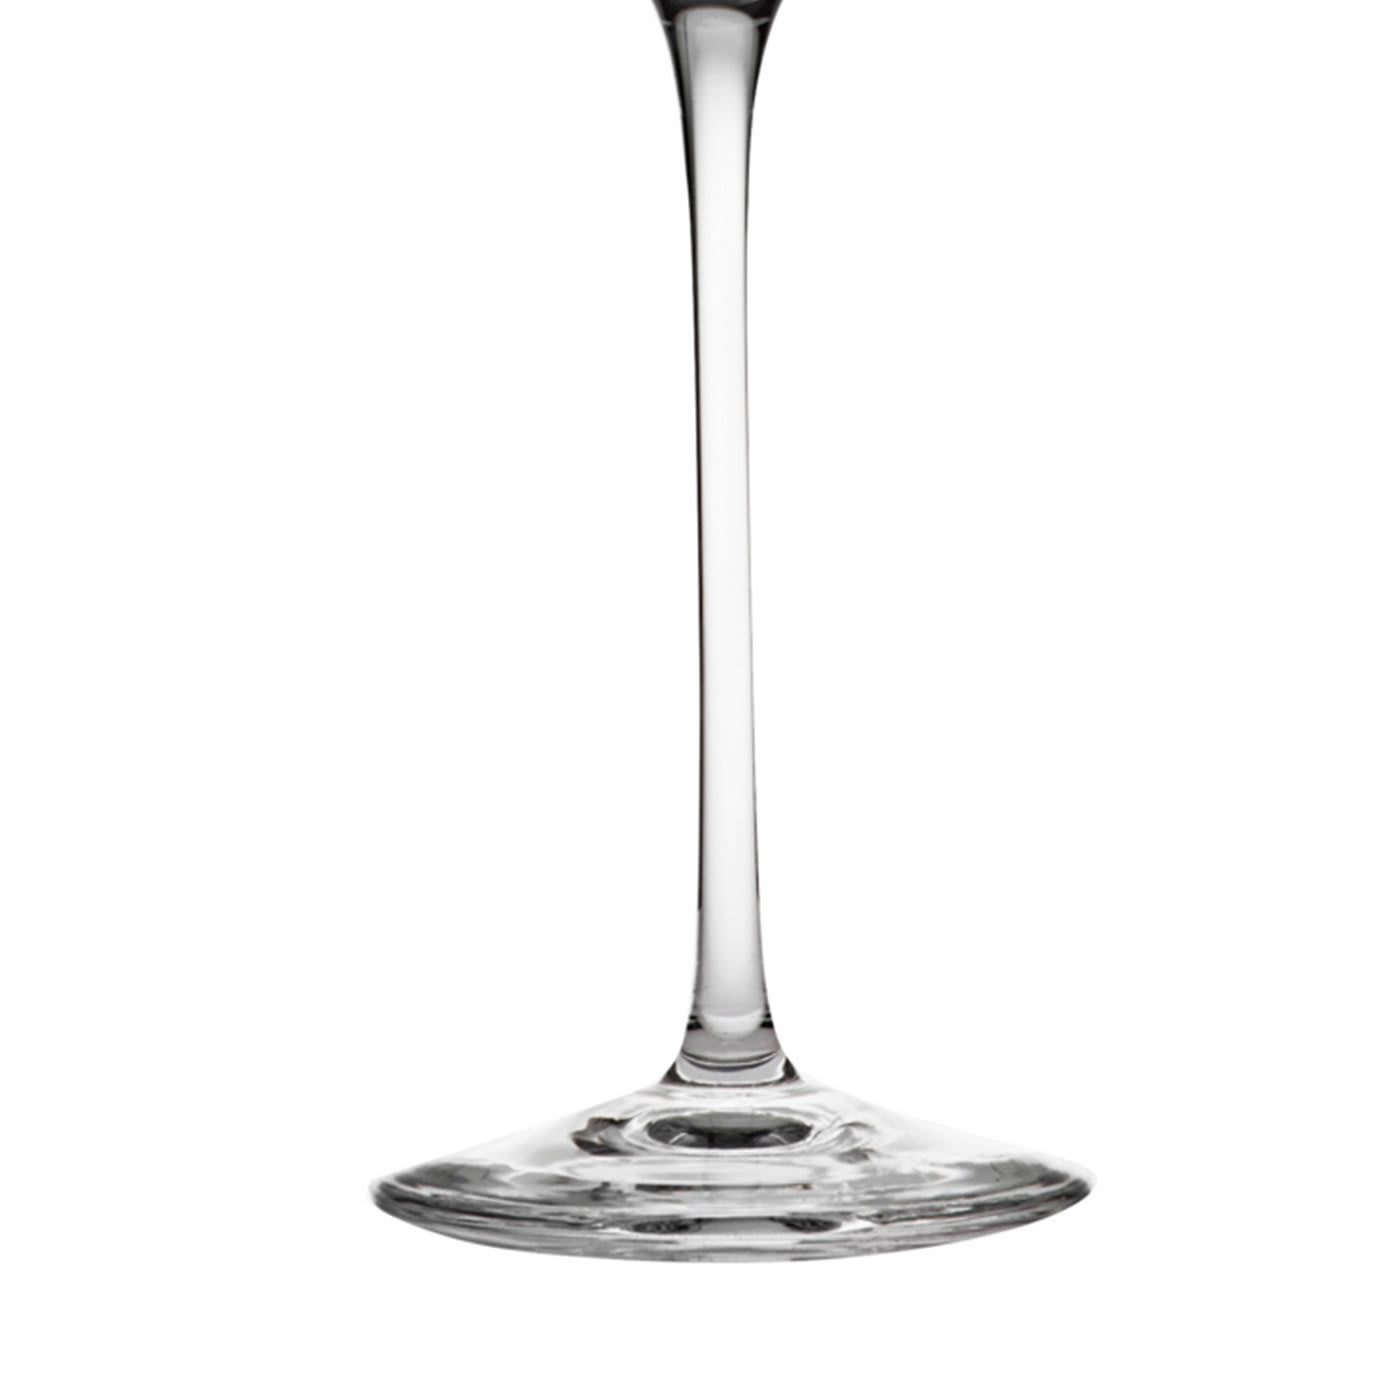 La Distilleria N°7 - Set of 6 Spirit Glasses - Cristalleria ColleVilca